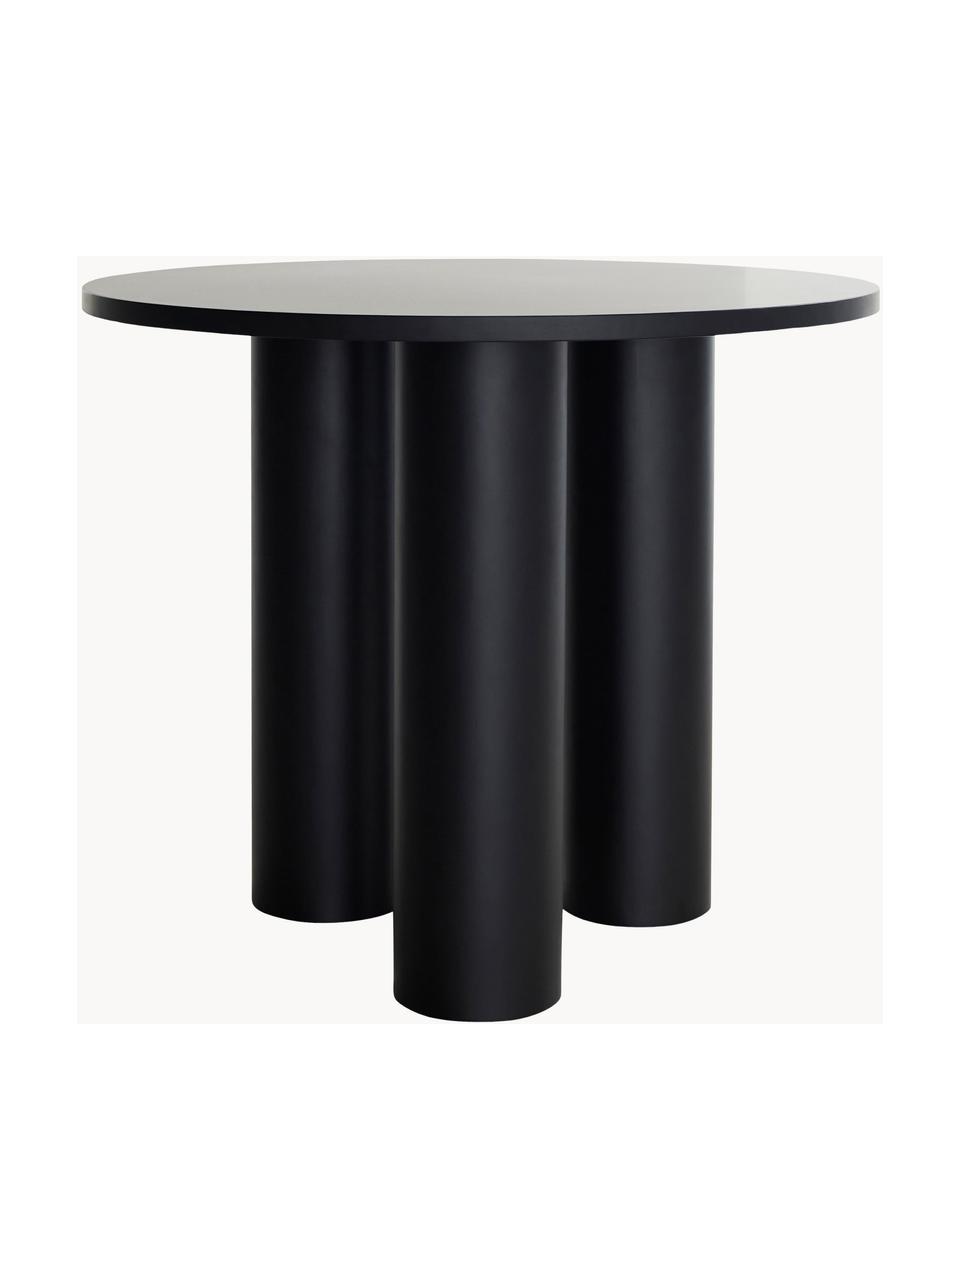 Okrúhly stolík Colette, Ø 90 cm, MDF-doska strednej hustoty s dyha z orechového dreva, lakované

Tento produkt je vyrobený z trvalo udržateľného dreva s certifikátom FSC®., Čierna, Ø 90 cm